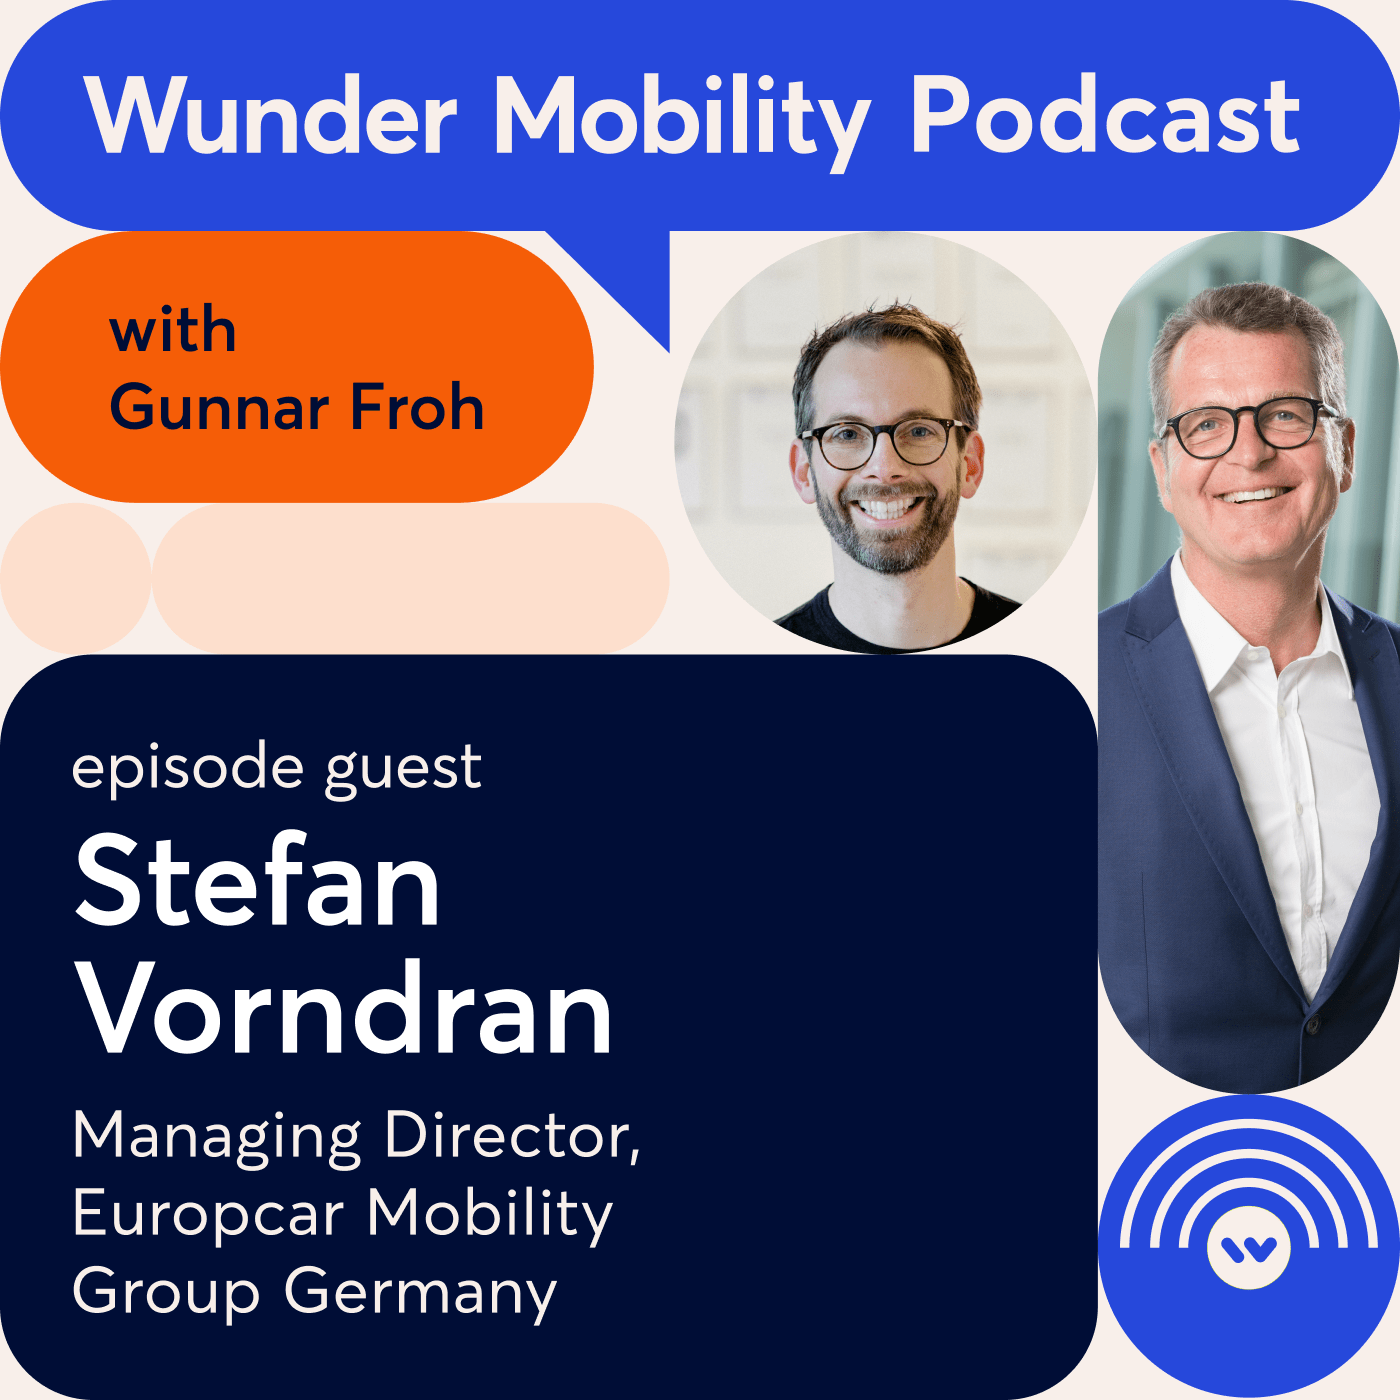 #6: Stefan Vorndran, Managing Director, Europcar Mobility Group Germany